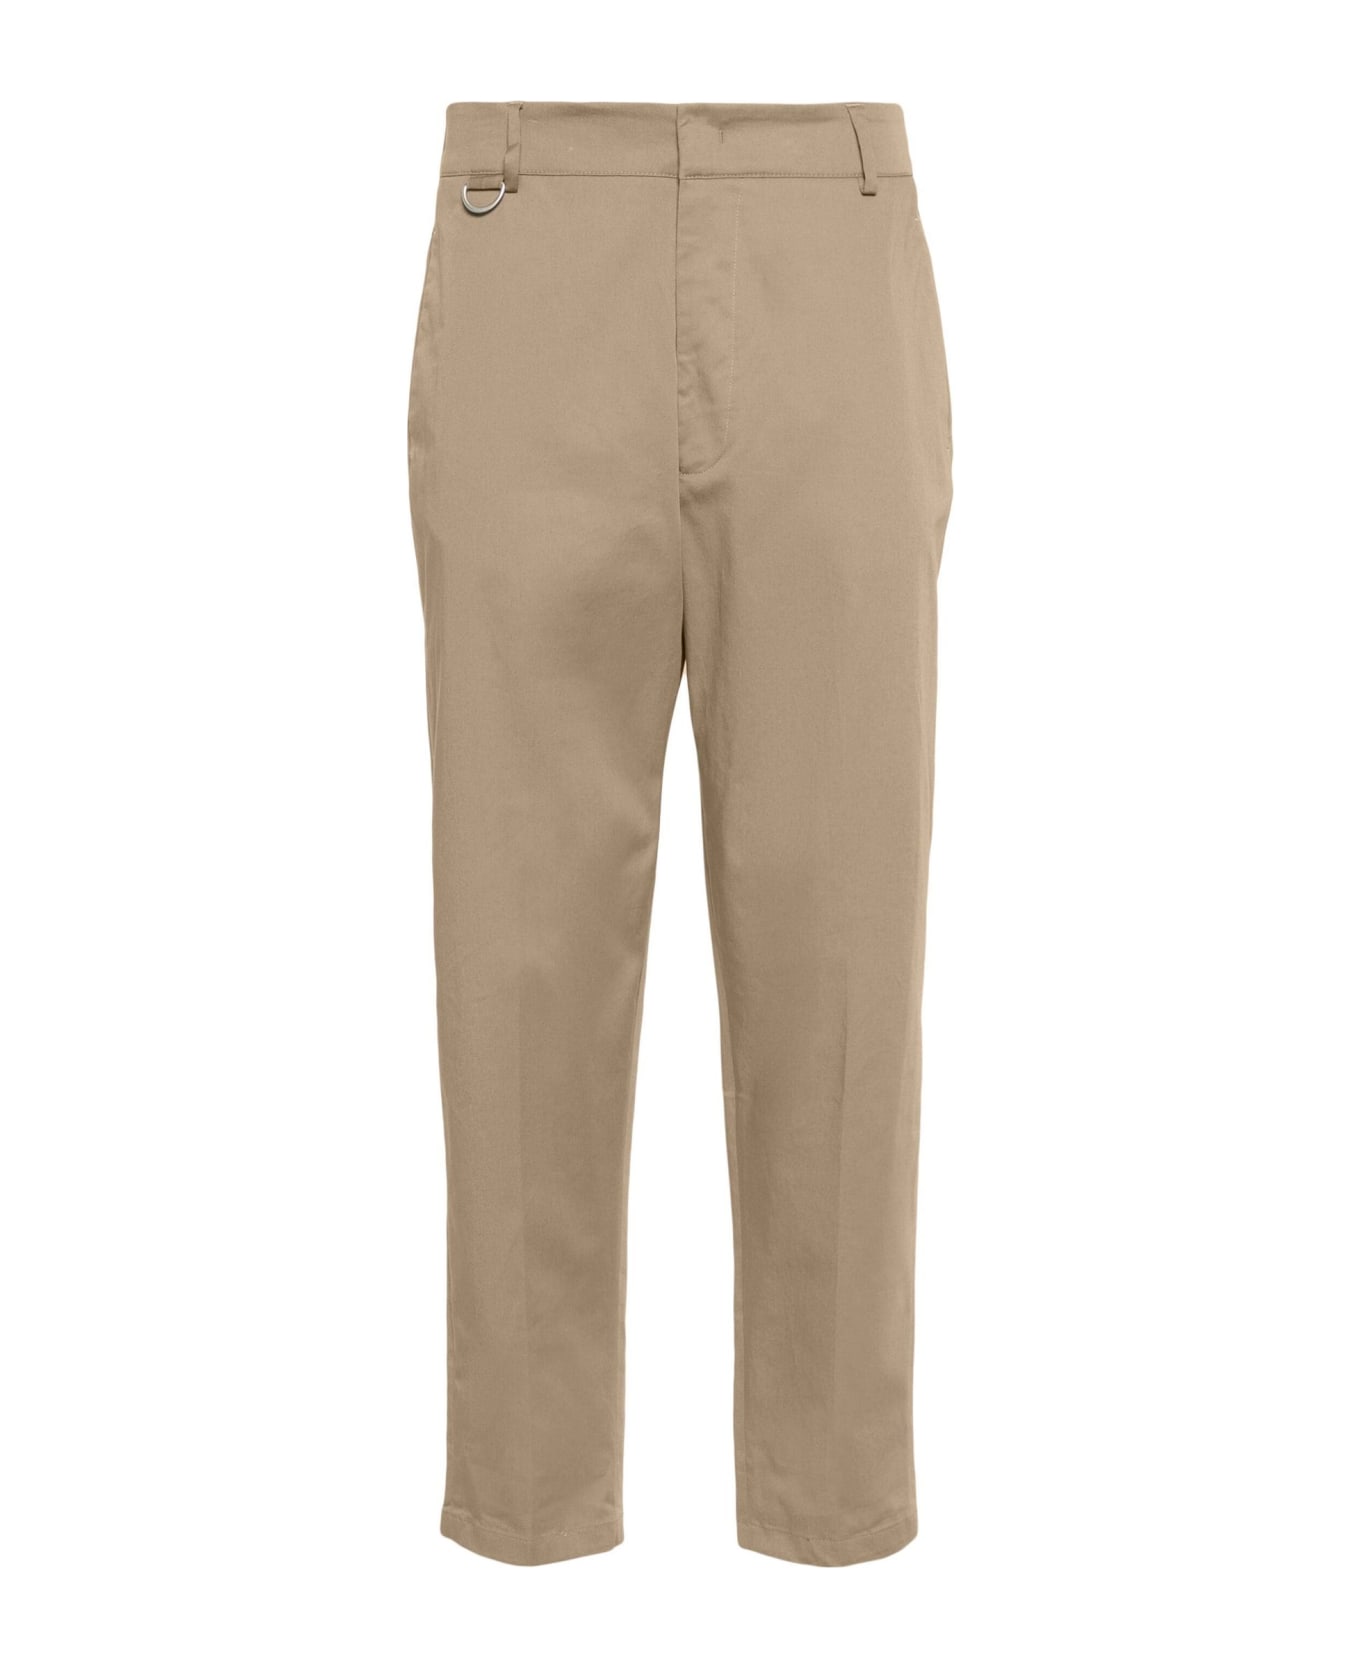 Low Brand Trousers Beige - Beige